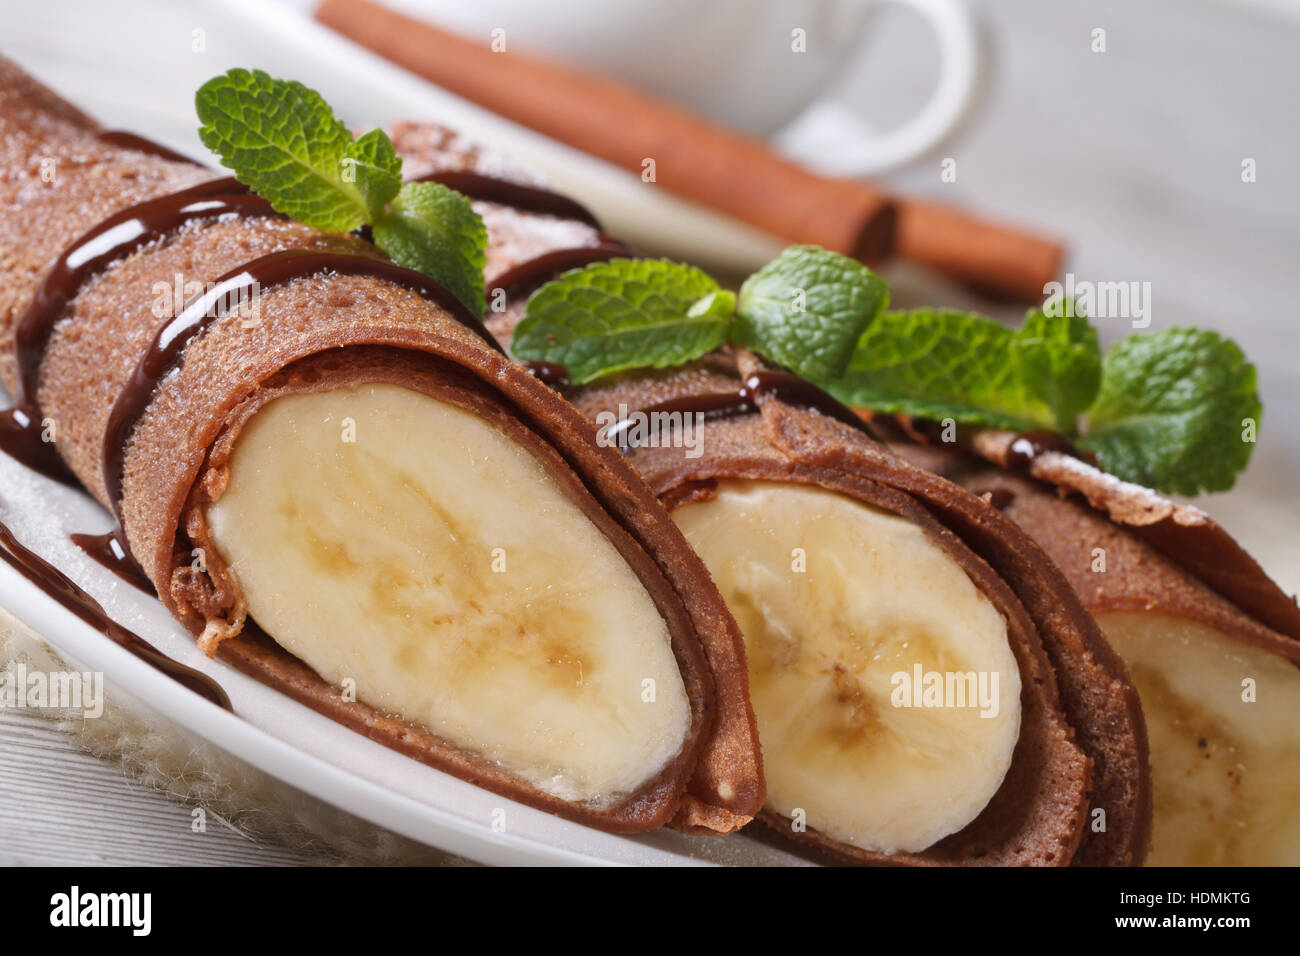 Schokolade Crepes mit Bananen Füllung Nahaufnahme auf einem weißen Teller. horizontale Stockfoto